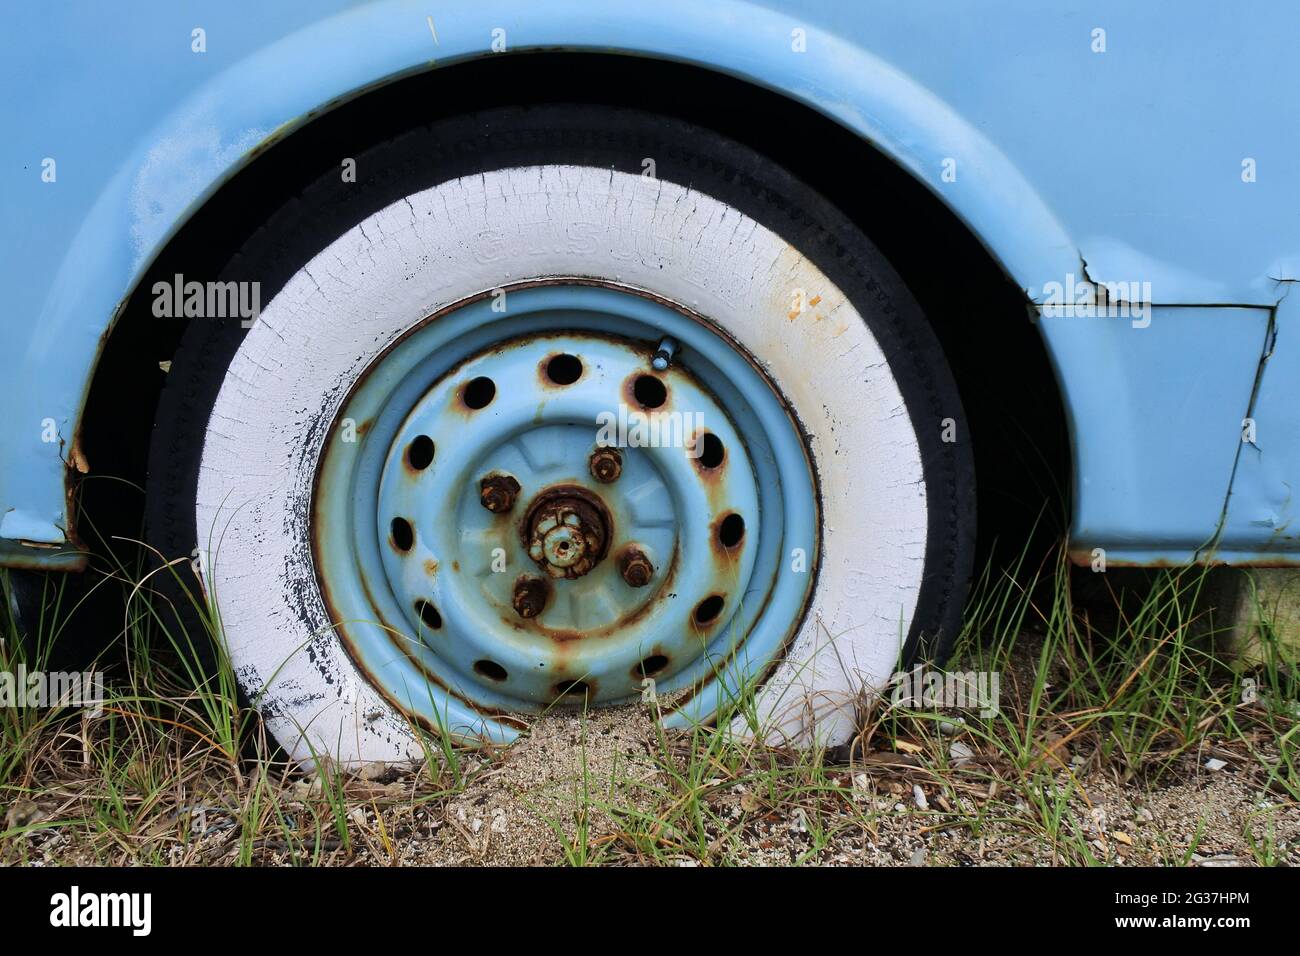 DENPASAR, Indonesia - 09 gennaio 2021: VW Combi auto che è stata danneggiata e lavata sulla spiaggia, Bali, Indonesia, 9 gennaio 2021 Foto Stock